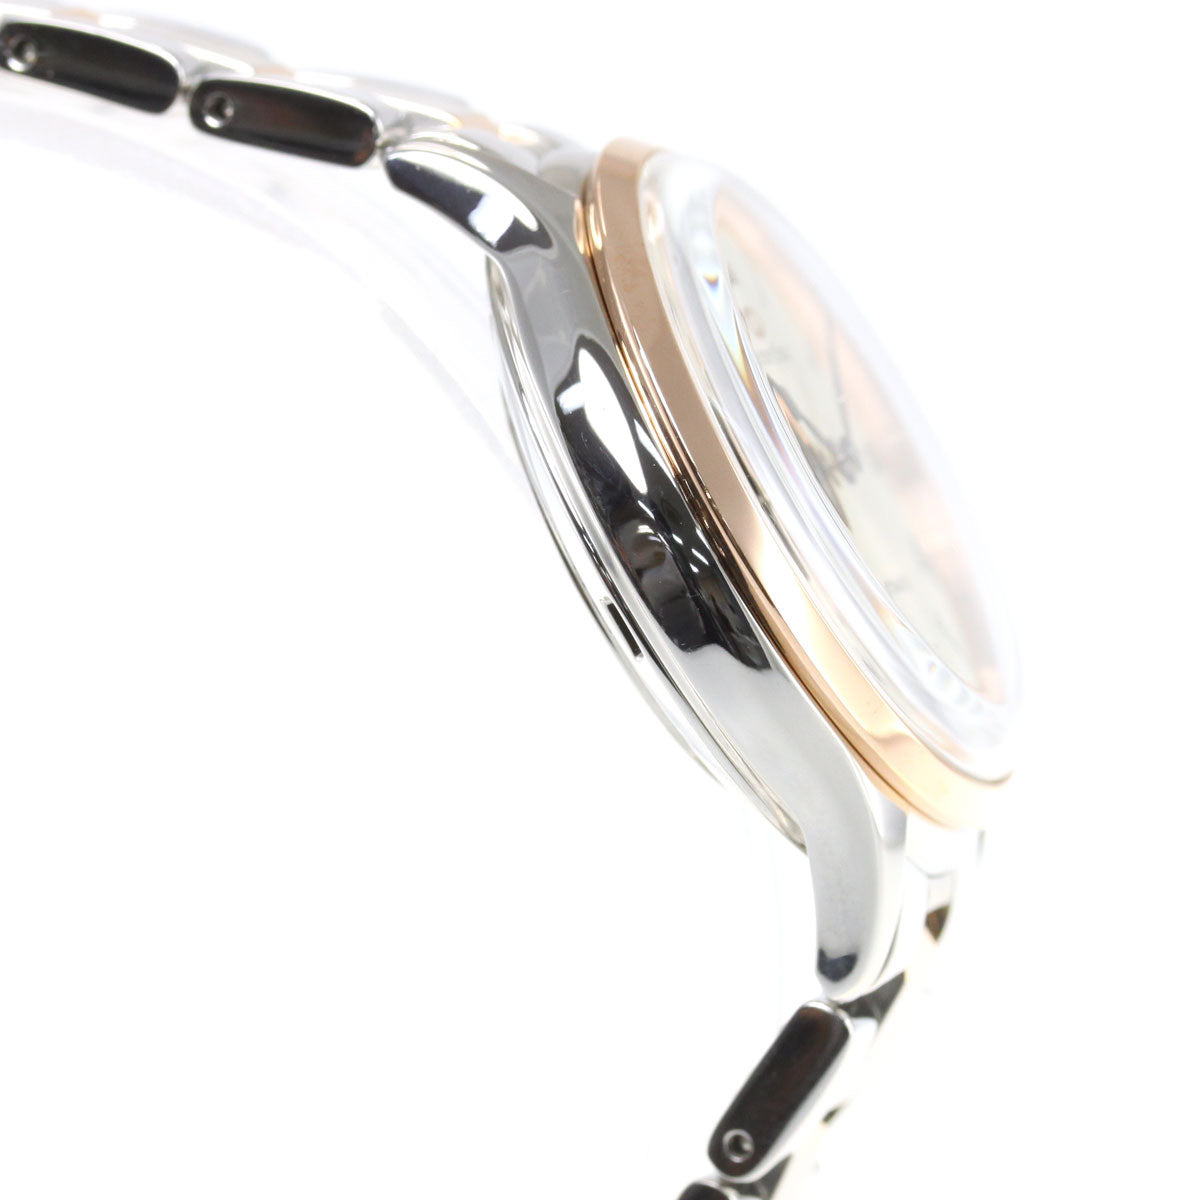 オリエントスター ORIENT STAR 腕時計 レディース 自動巻き 機械式 クラシック CLASSIC クラシックセミスケルトン RK-ND0001S